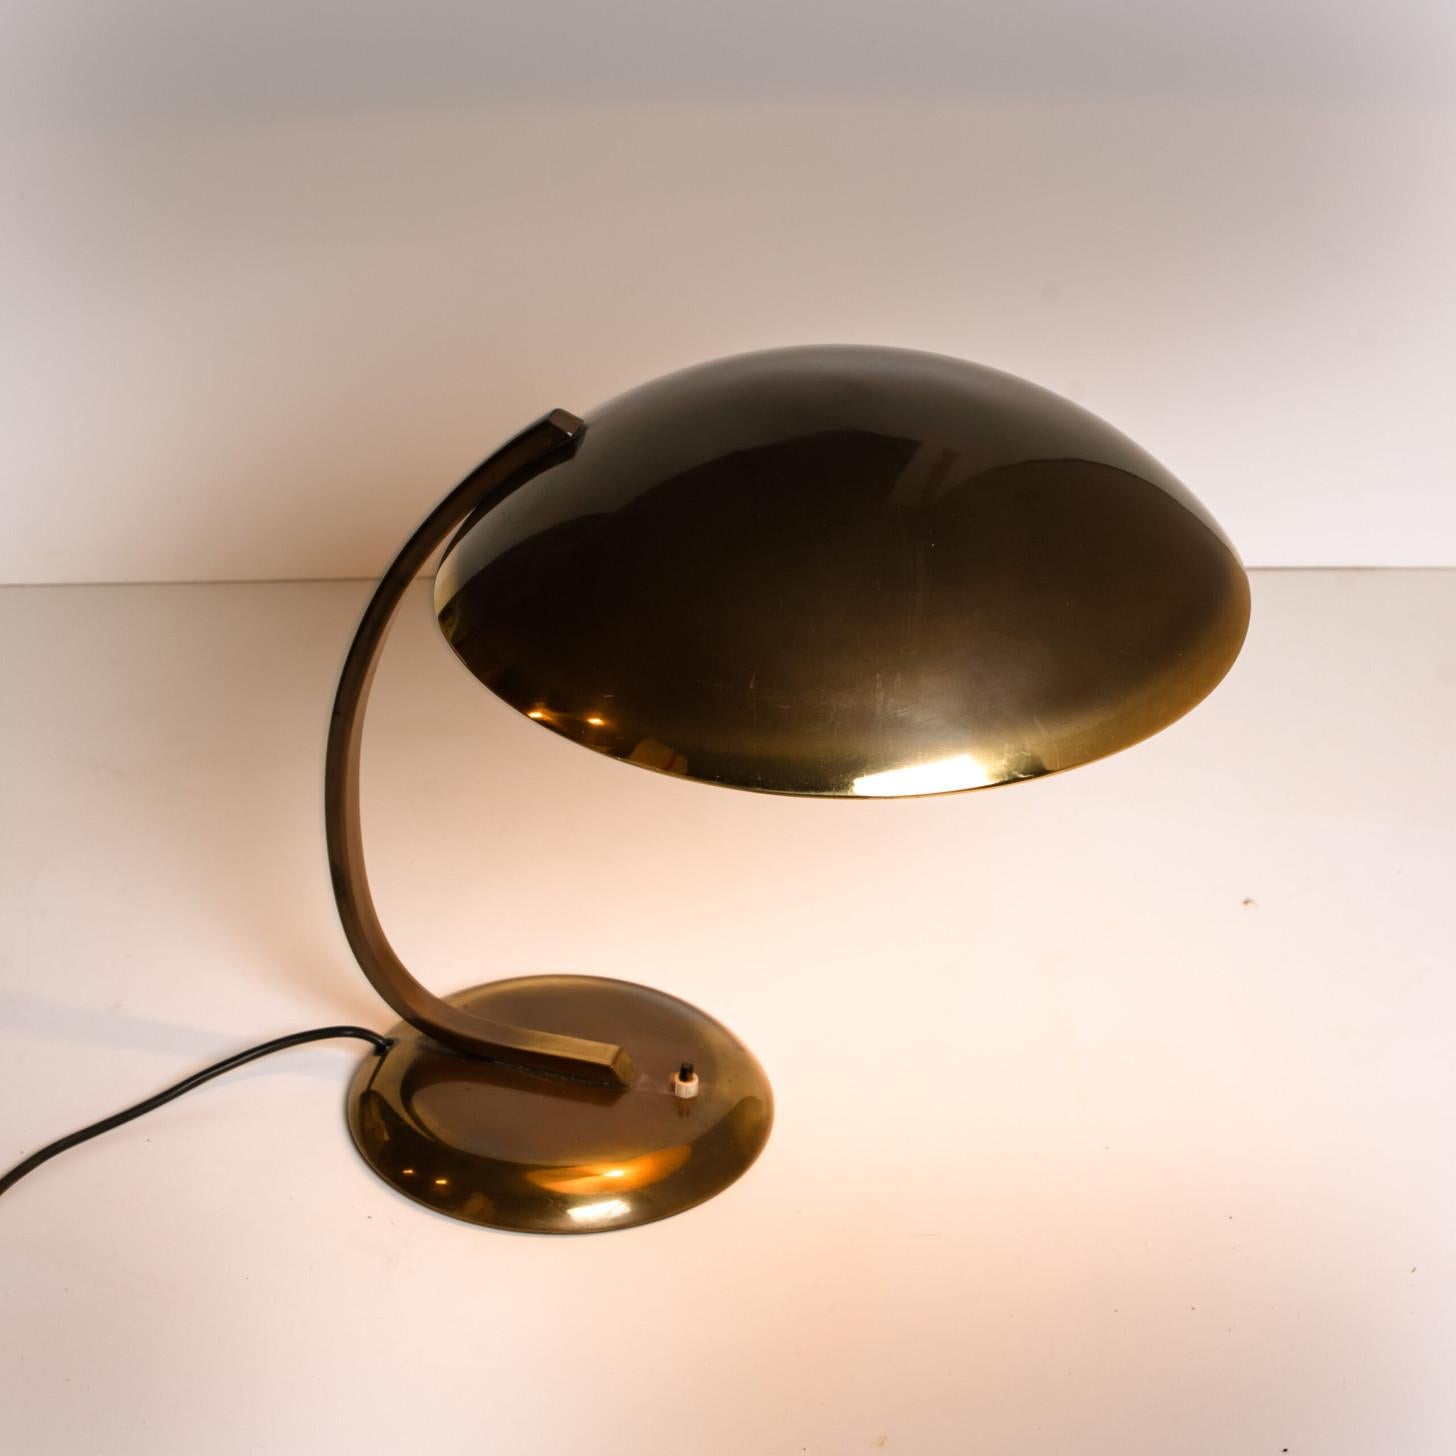 Christian Dell for Kaiser Idell / Kaiser Leuchten Brass Desk or Table Lamp, Art  In Good Condition For Sale In Rijssen, NL